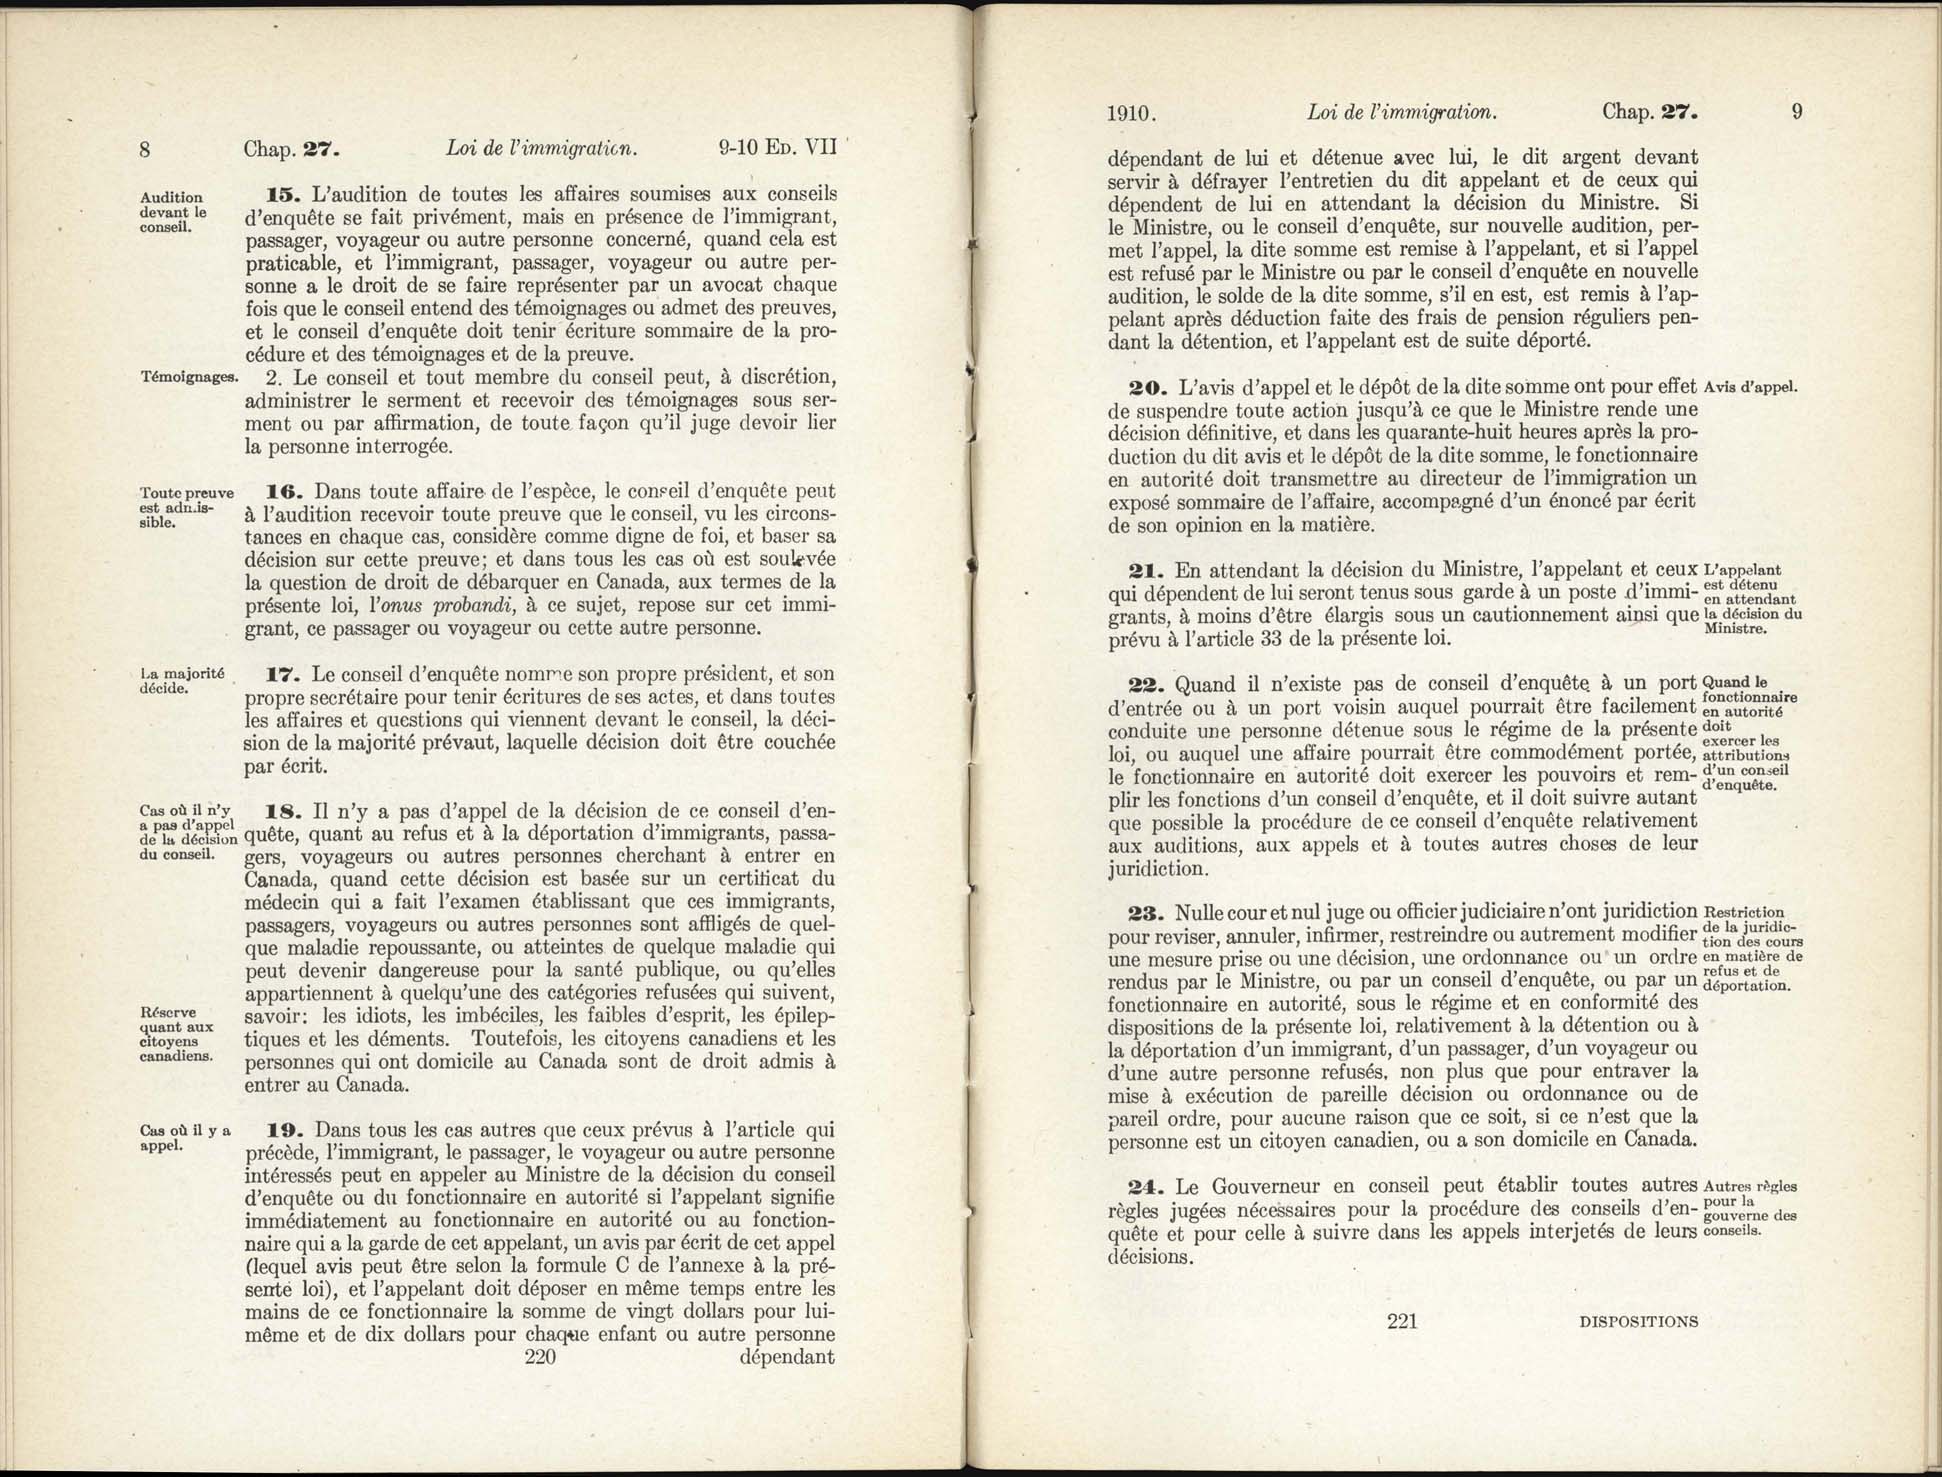 Chap 27 Page 220, 221 L’Acte d’immigration, 1910